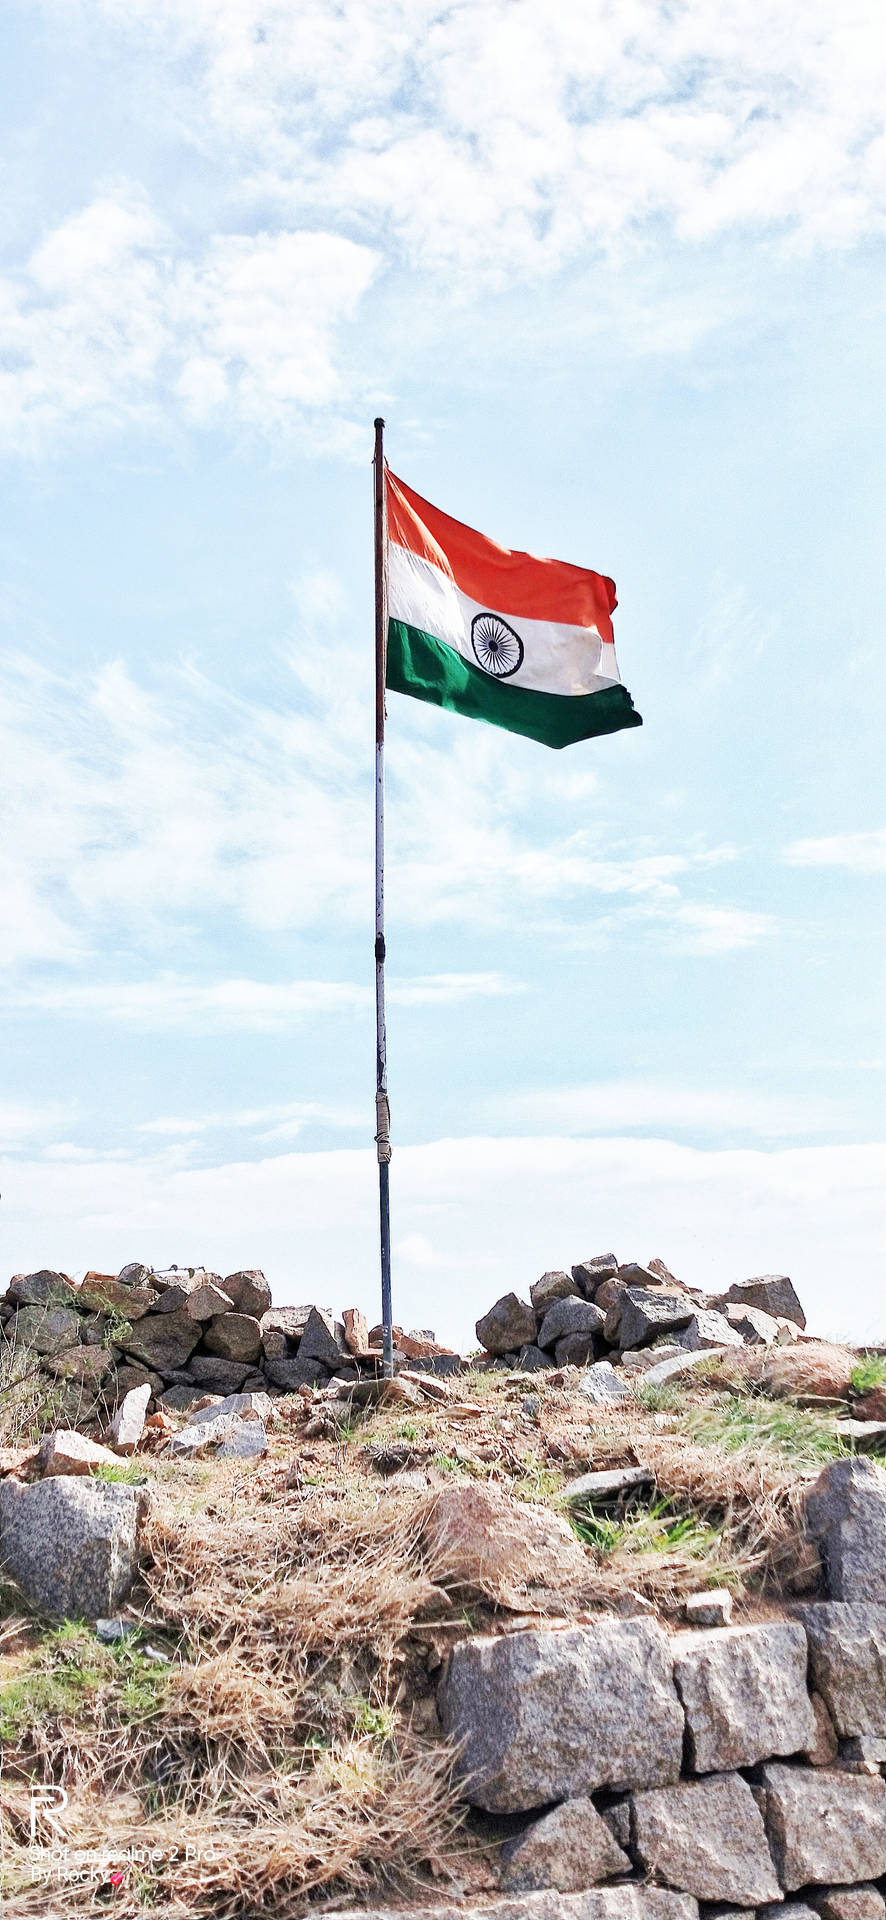 Cảnh núi đá quốc kỳ Ấn Độ (Rocky landscape Indian flag): Cảnh núi đá quốc kỳ Ấn Độ là một trong những thước phim đẹp nhất mà bạn sẽ từng xem. Điểm nhấn là cây cờ lớn giữa núi đá và những đám mây trắng xóa phía sau. Hãy để mình bị thôi miên bởi vẻ đẹp tự nhiên này.